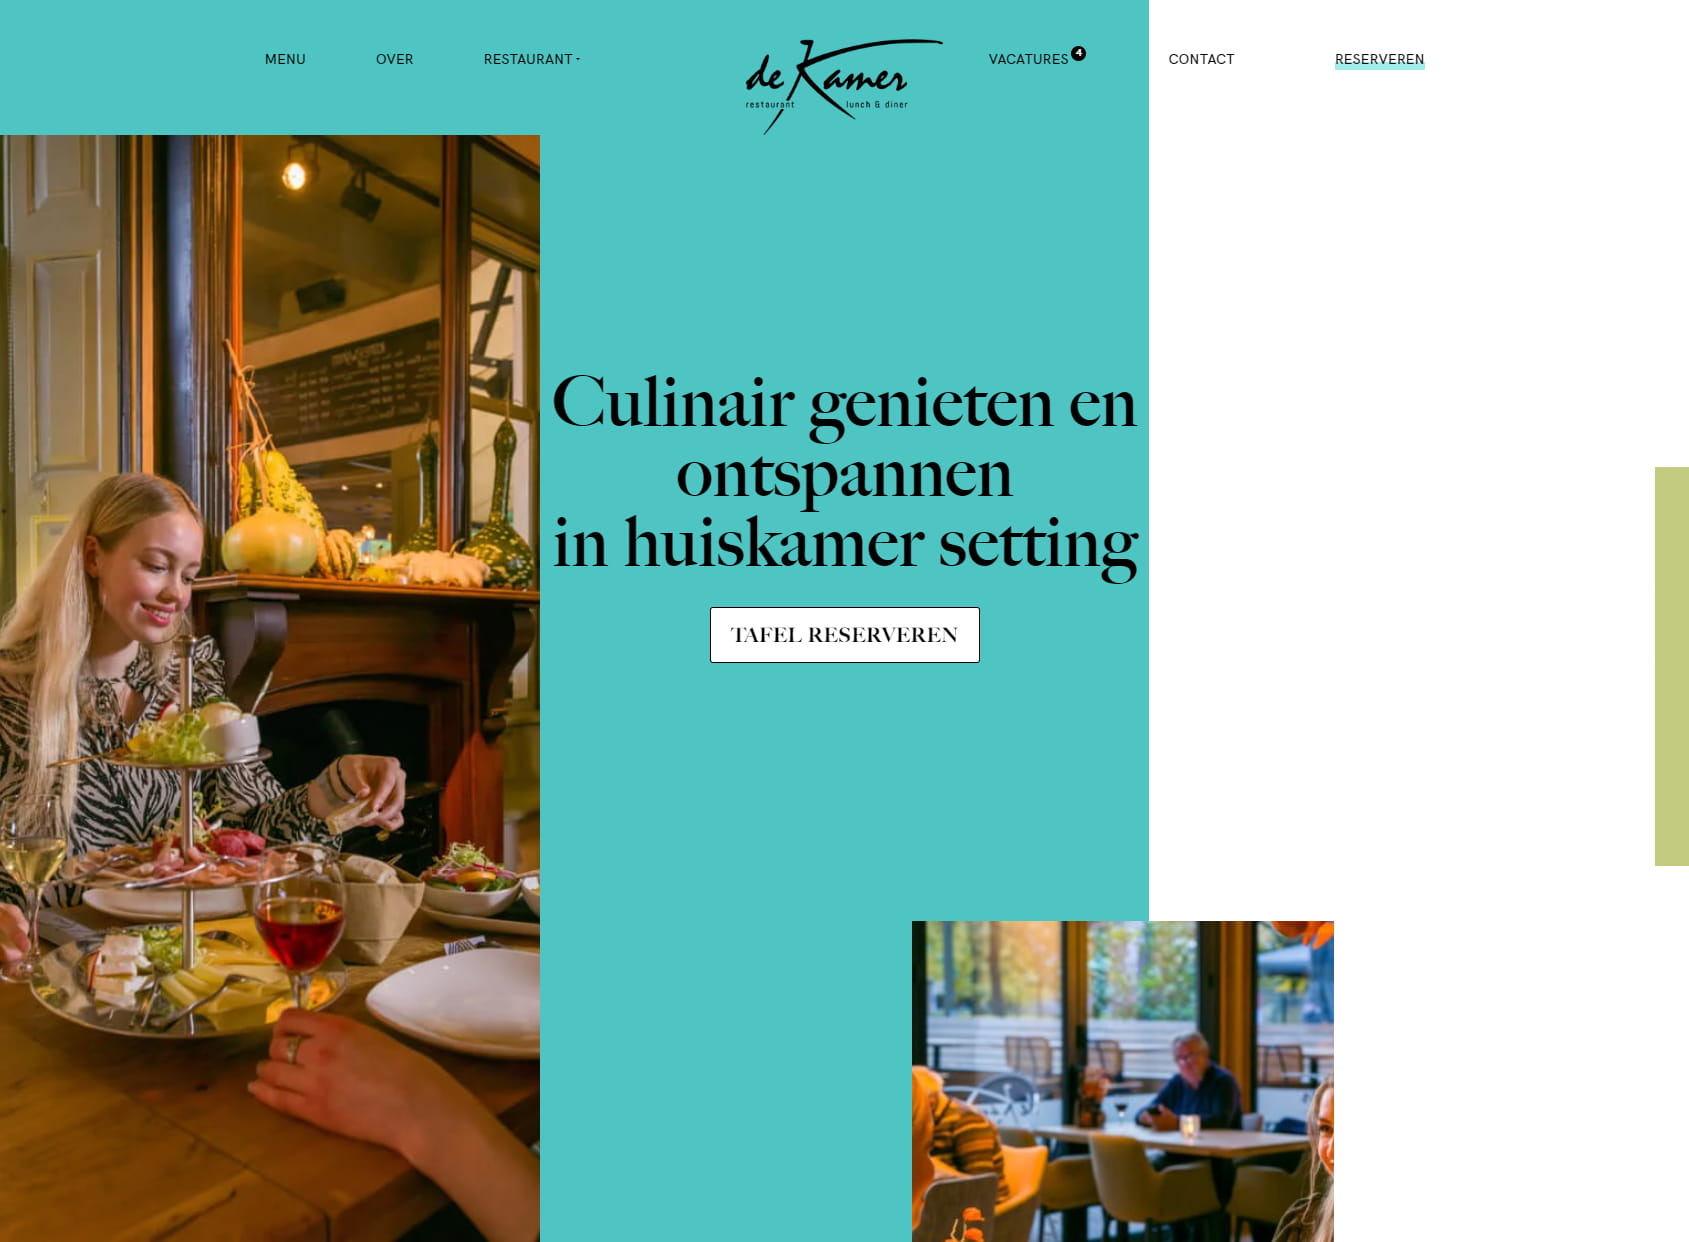 Restaurant Galerie De Kamer